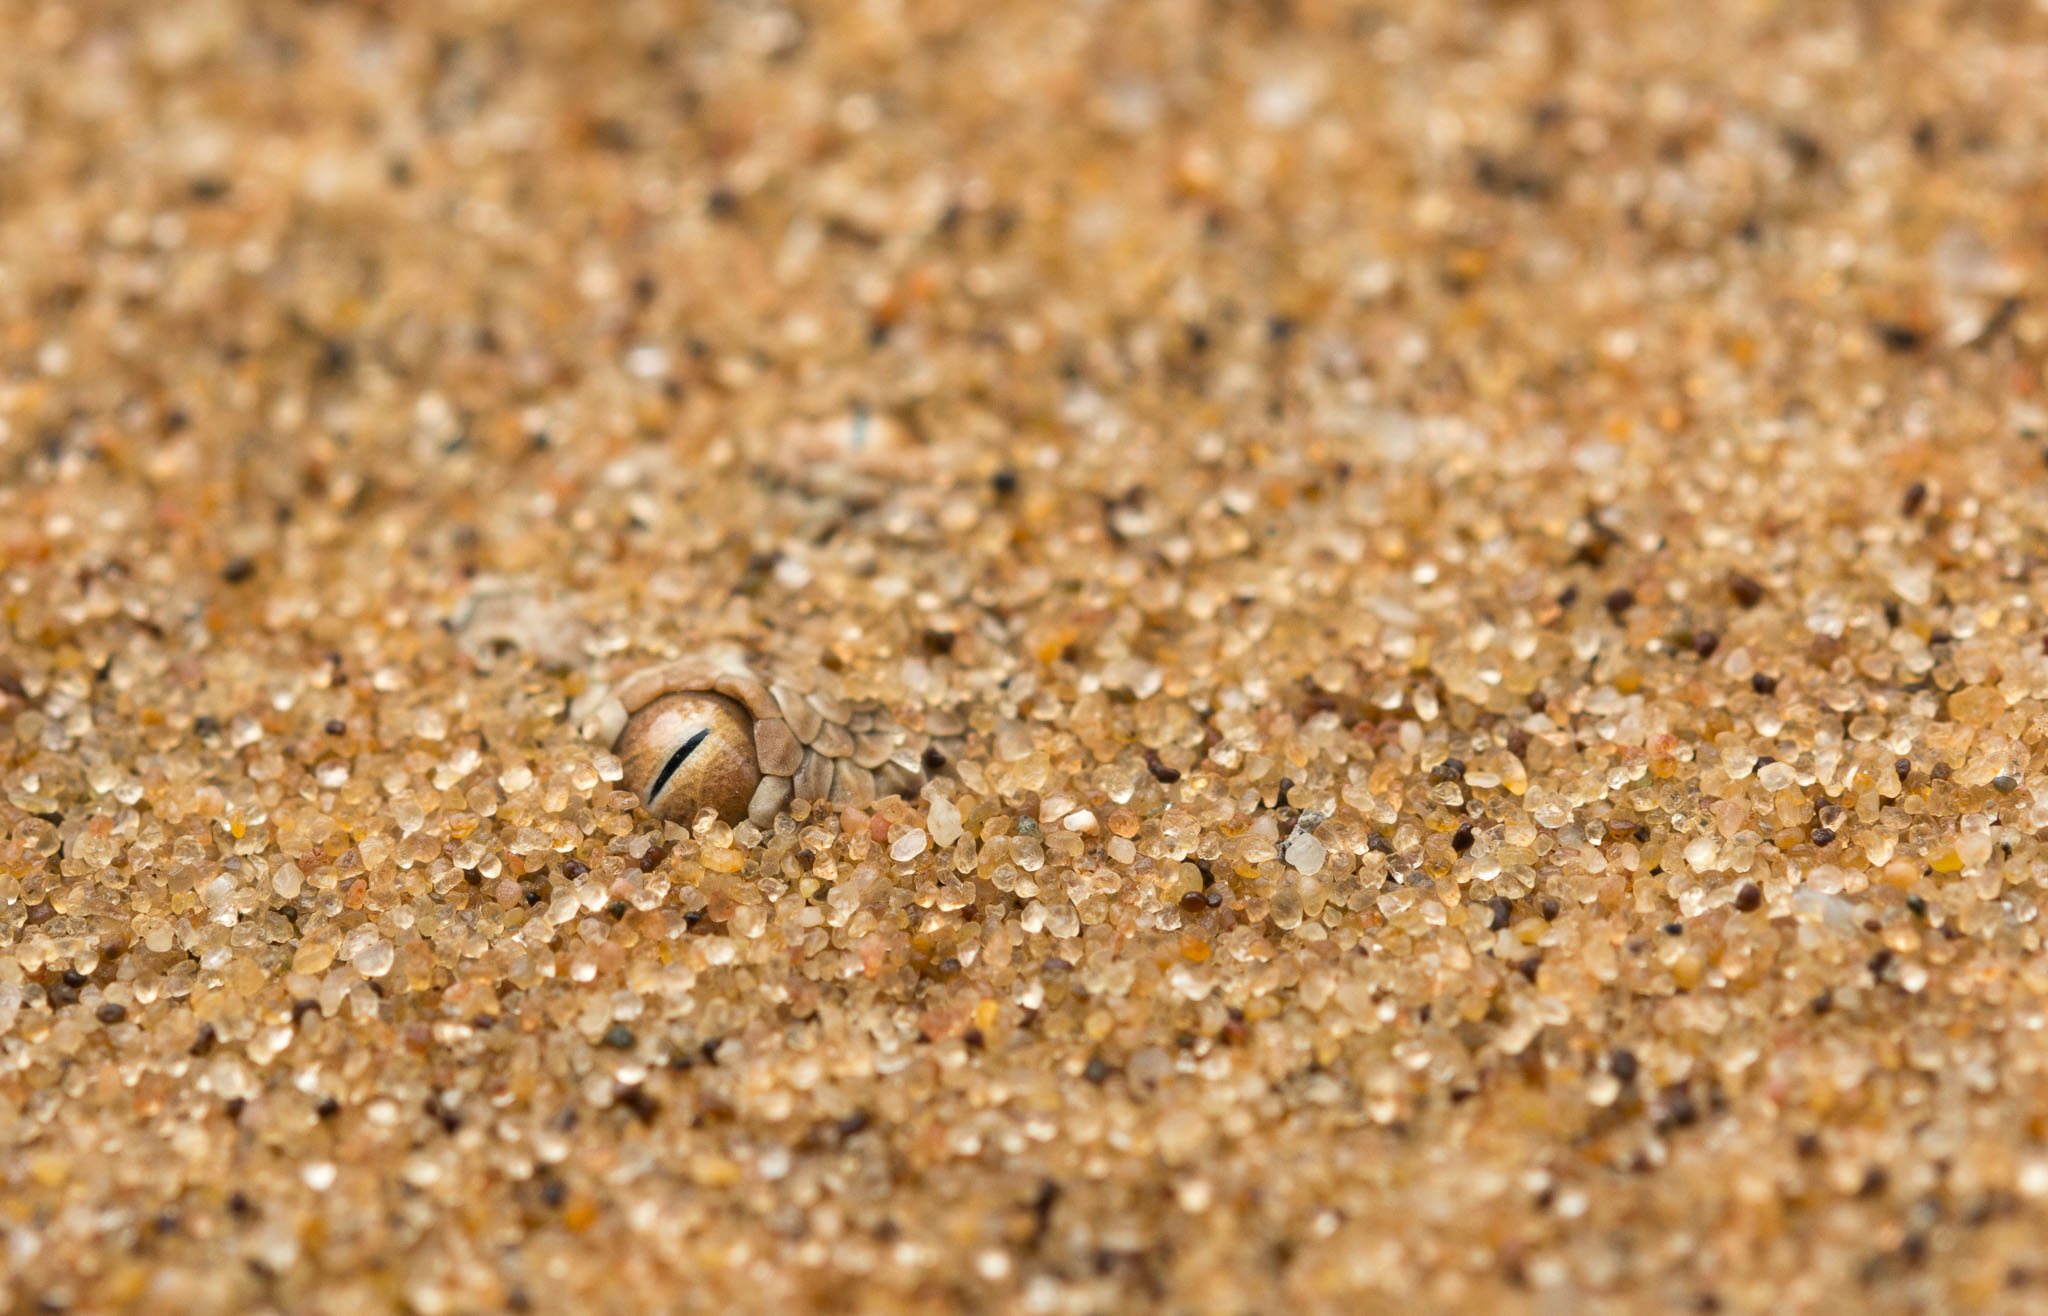 Eine Zwergpuffotter lauert im Sand vergraben auf Beute.